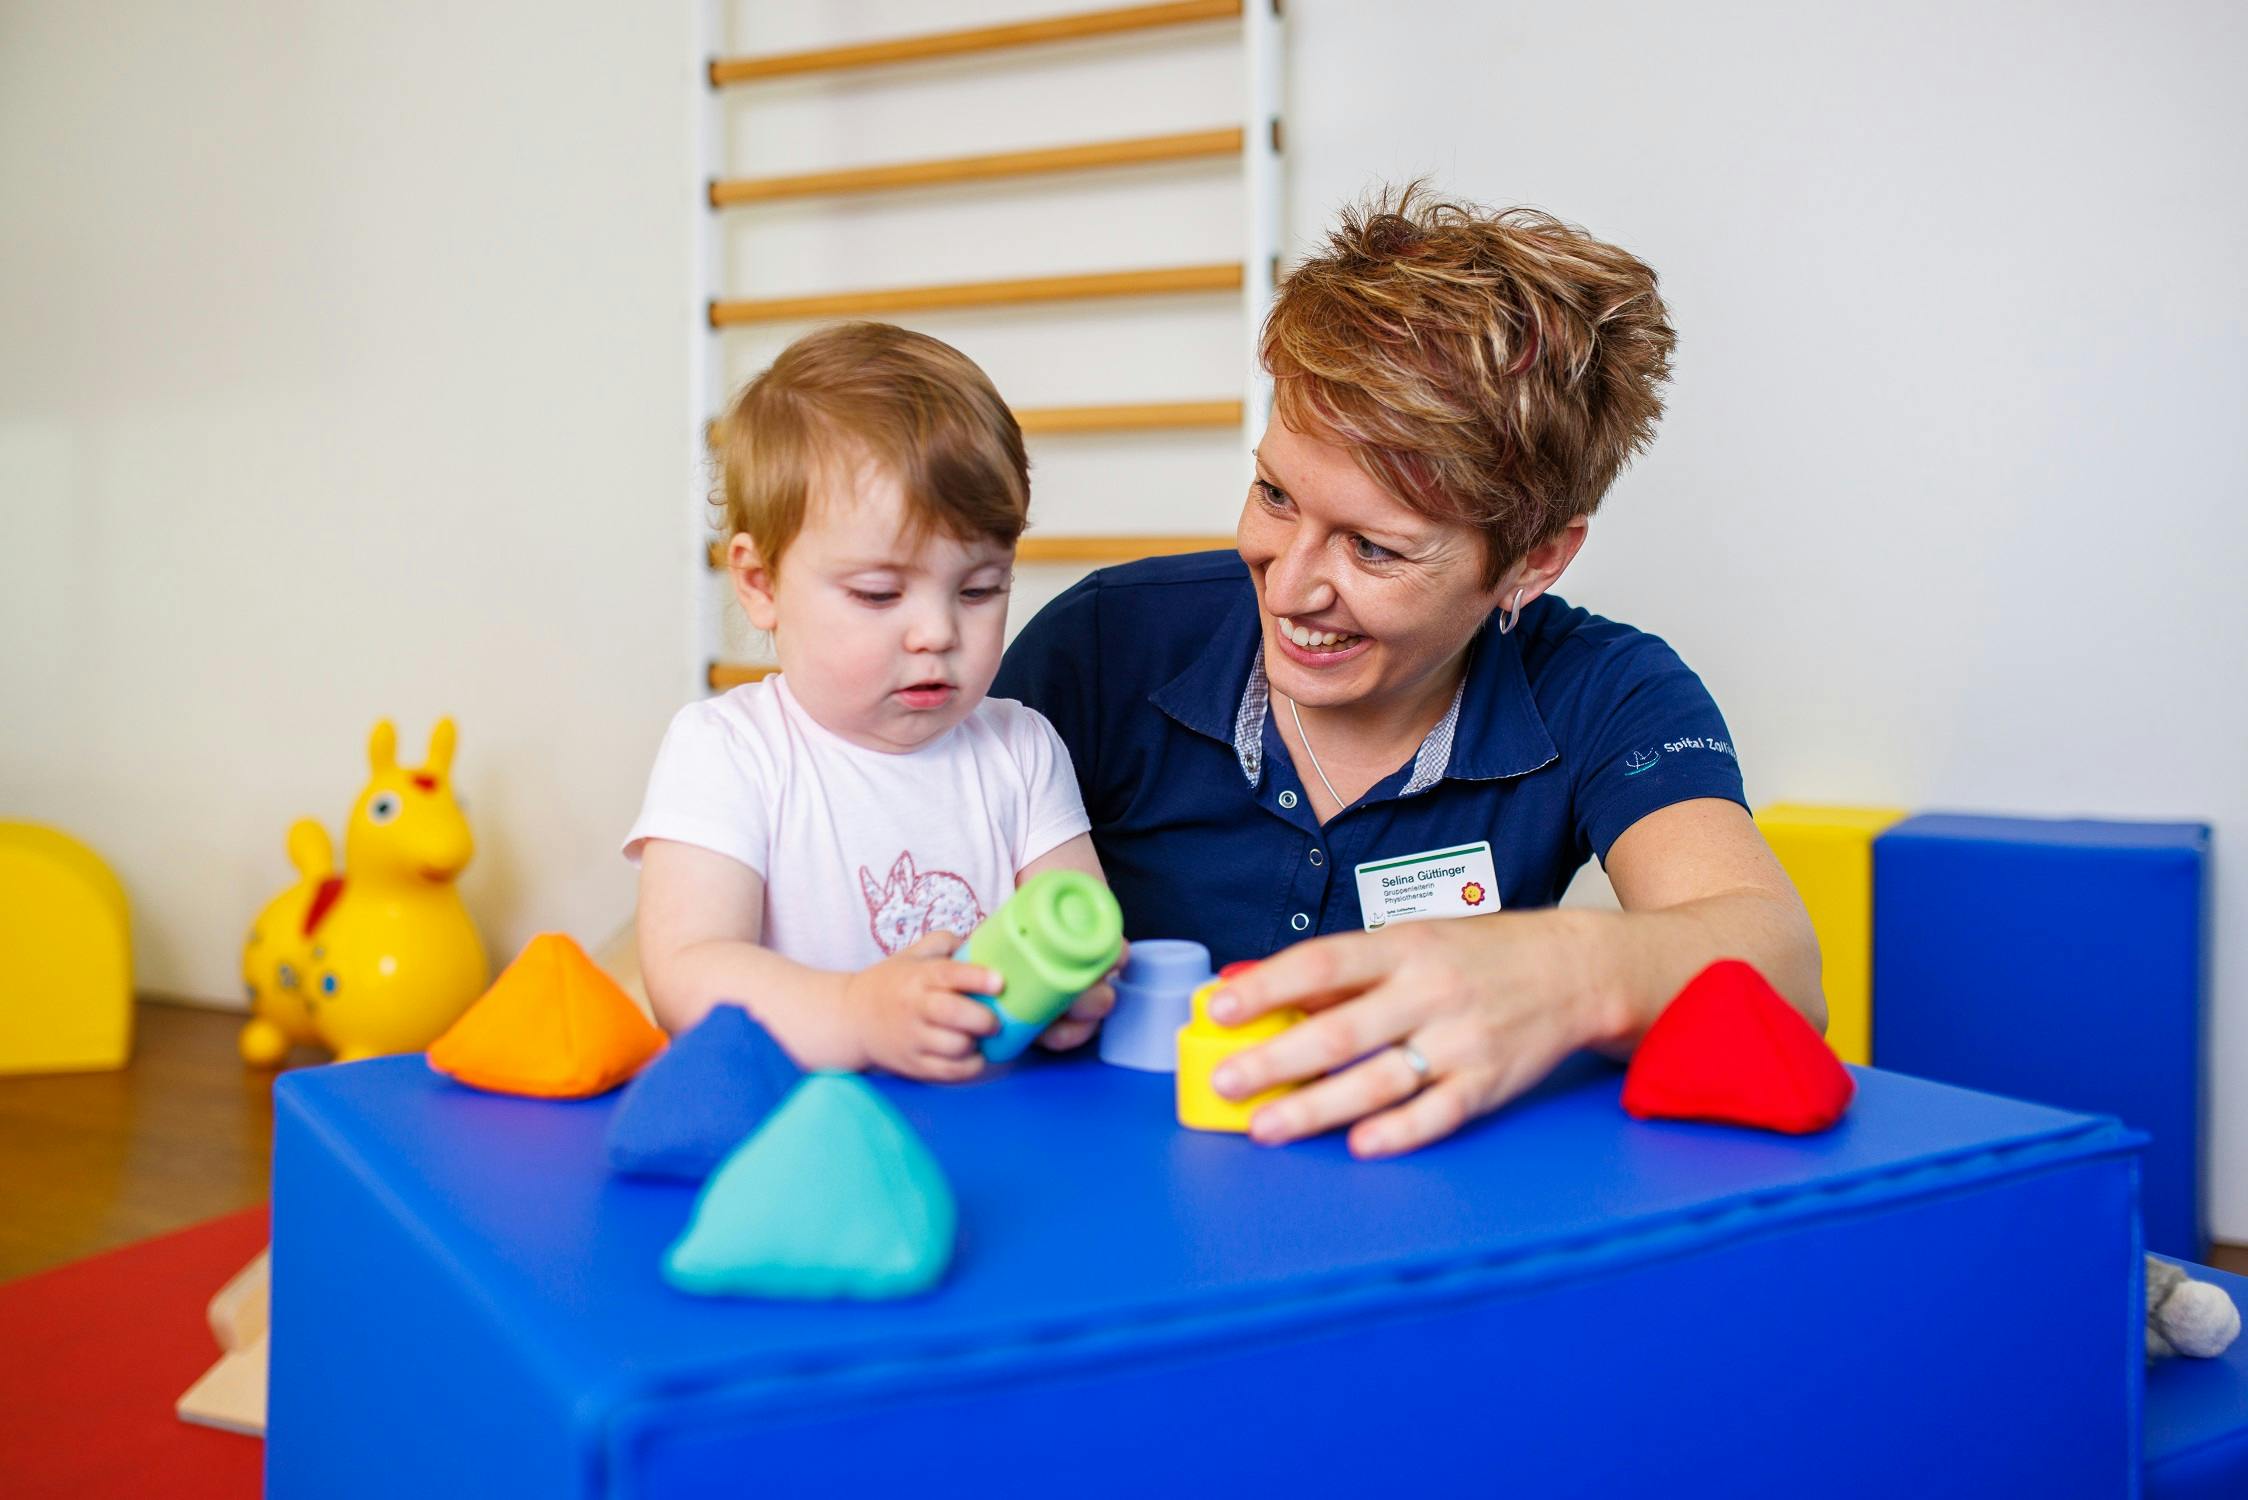 Therapeutin arbeitet mit Kleinkind an Feinmotorik mit Spielzeug in einer Kindertherapieeinrichtung.